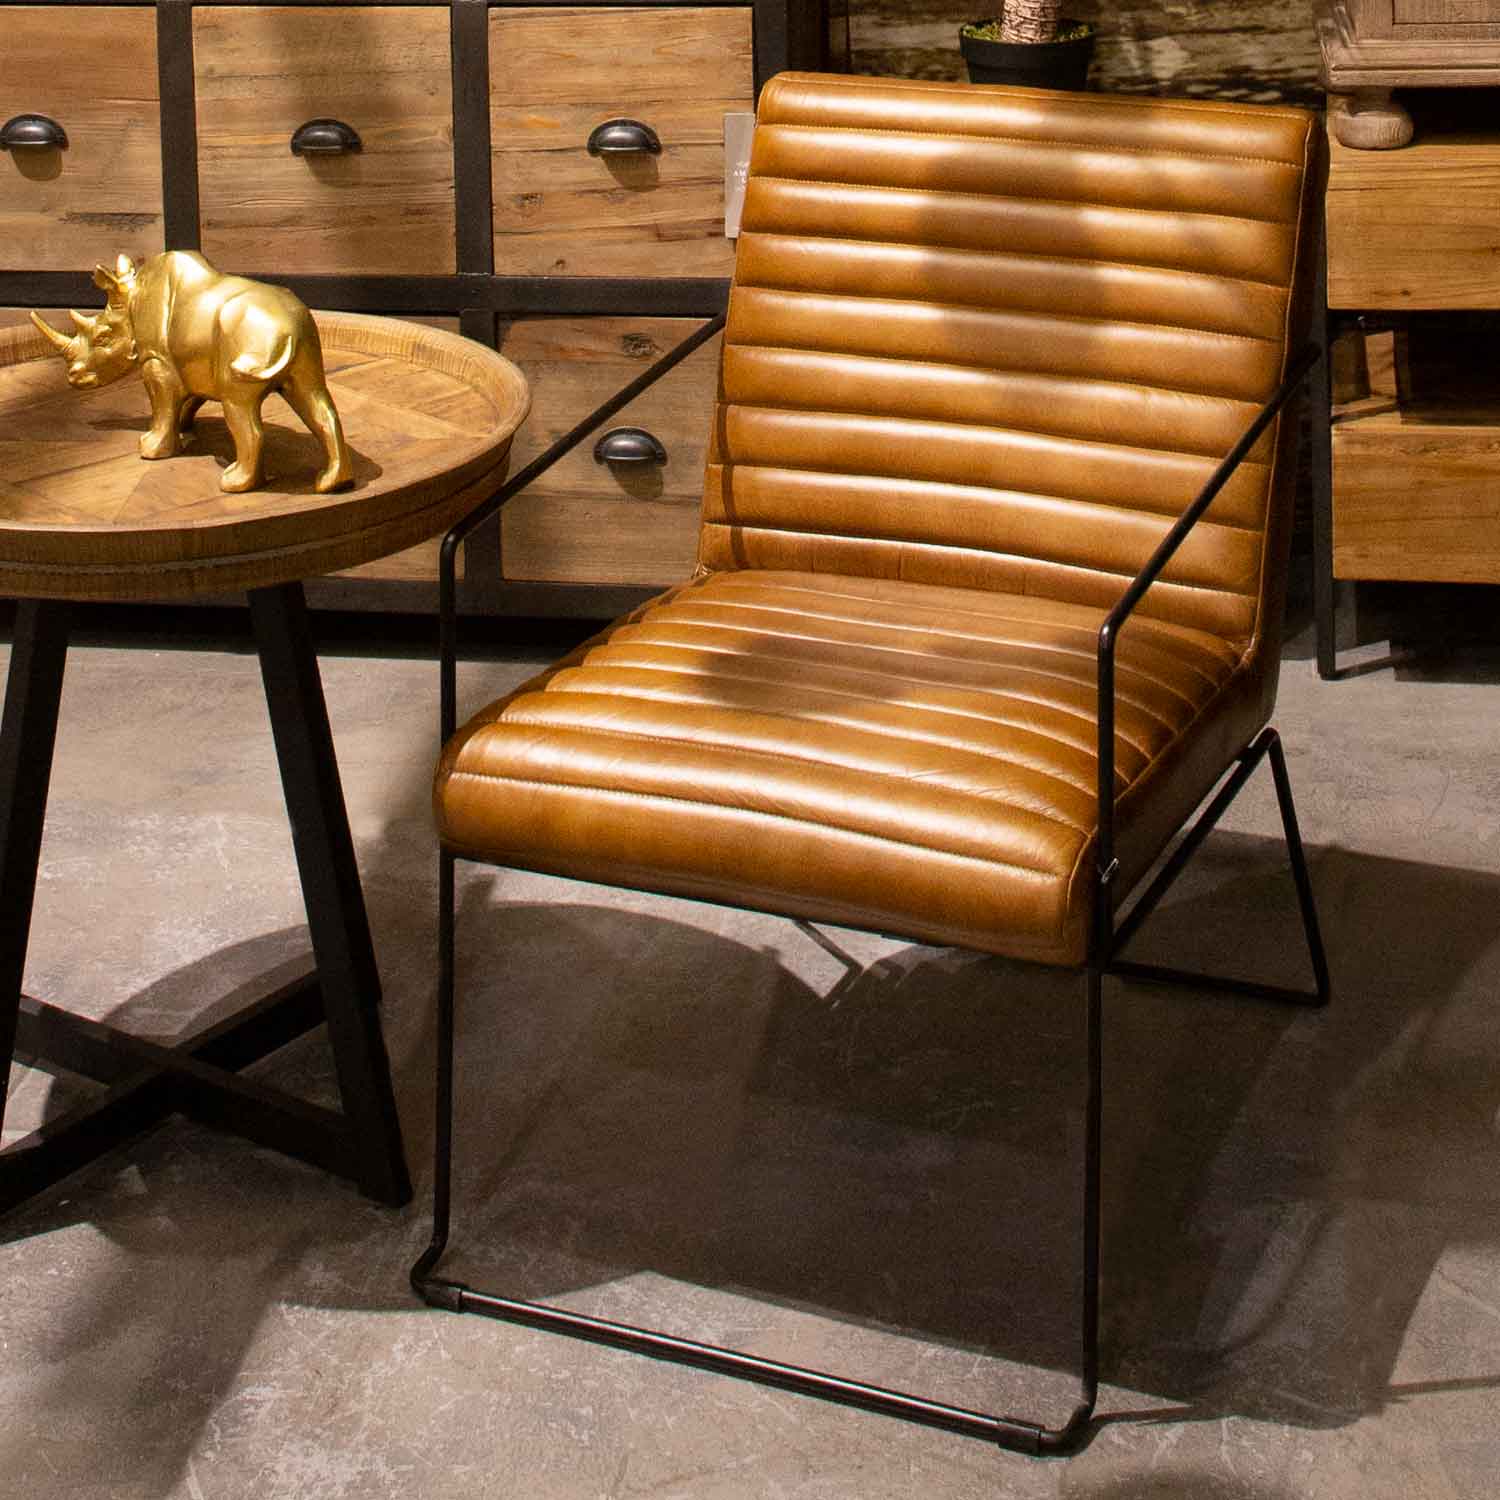 Mesa Línea Clásica & Sillas Línea Noble #mesa #comedor #sillas #silla # madera #hierro #interiordiseño #interiordesign #interiores #muebles…